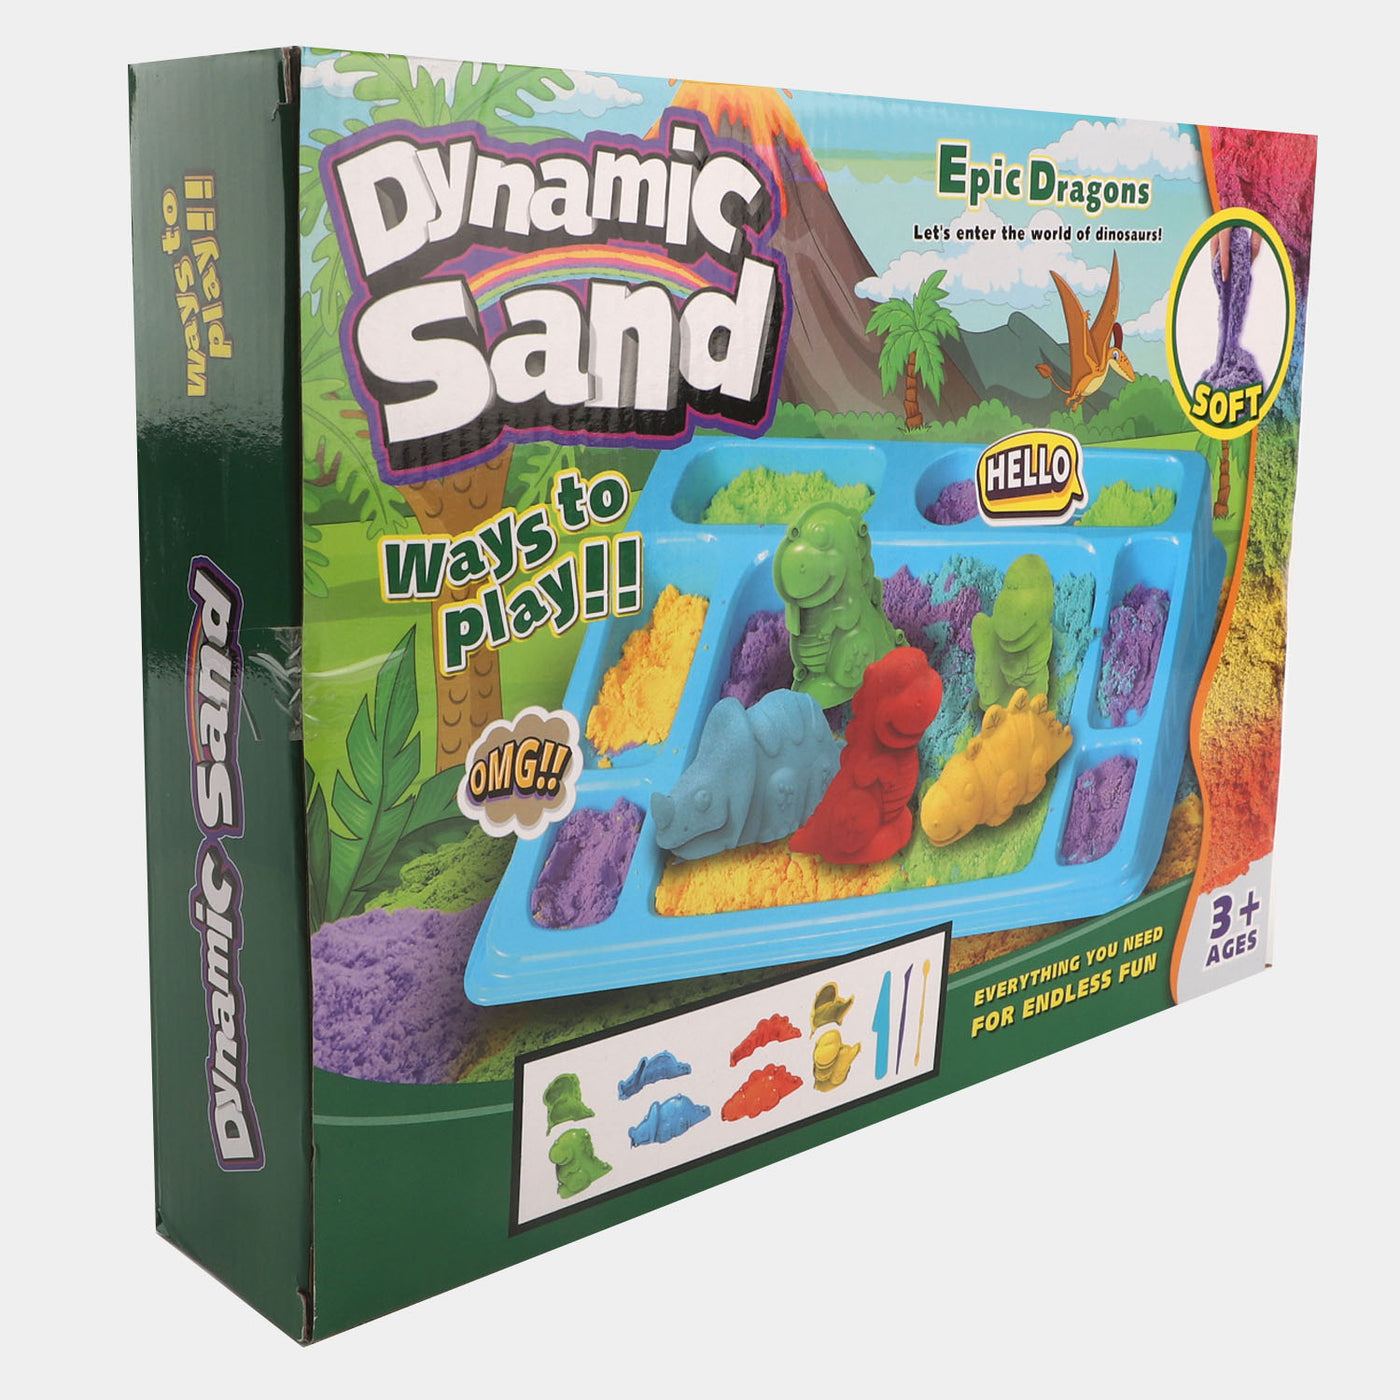 3D Dinosaur Magic Sand Play Set